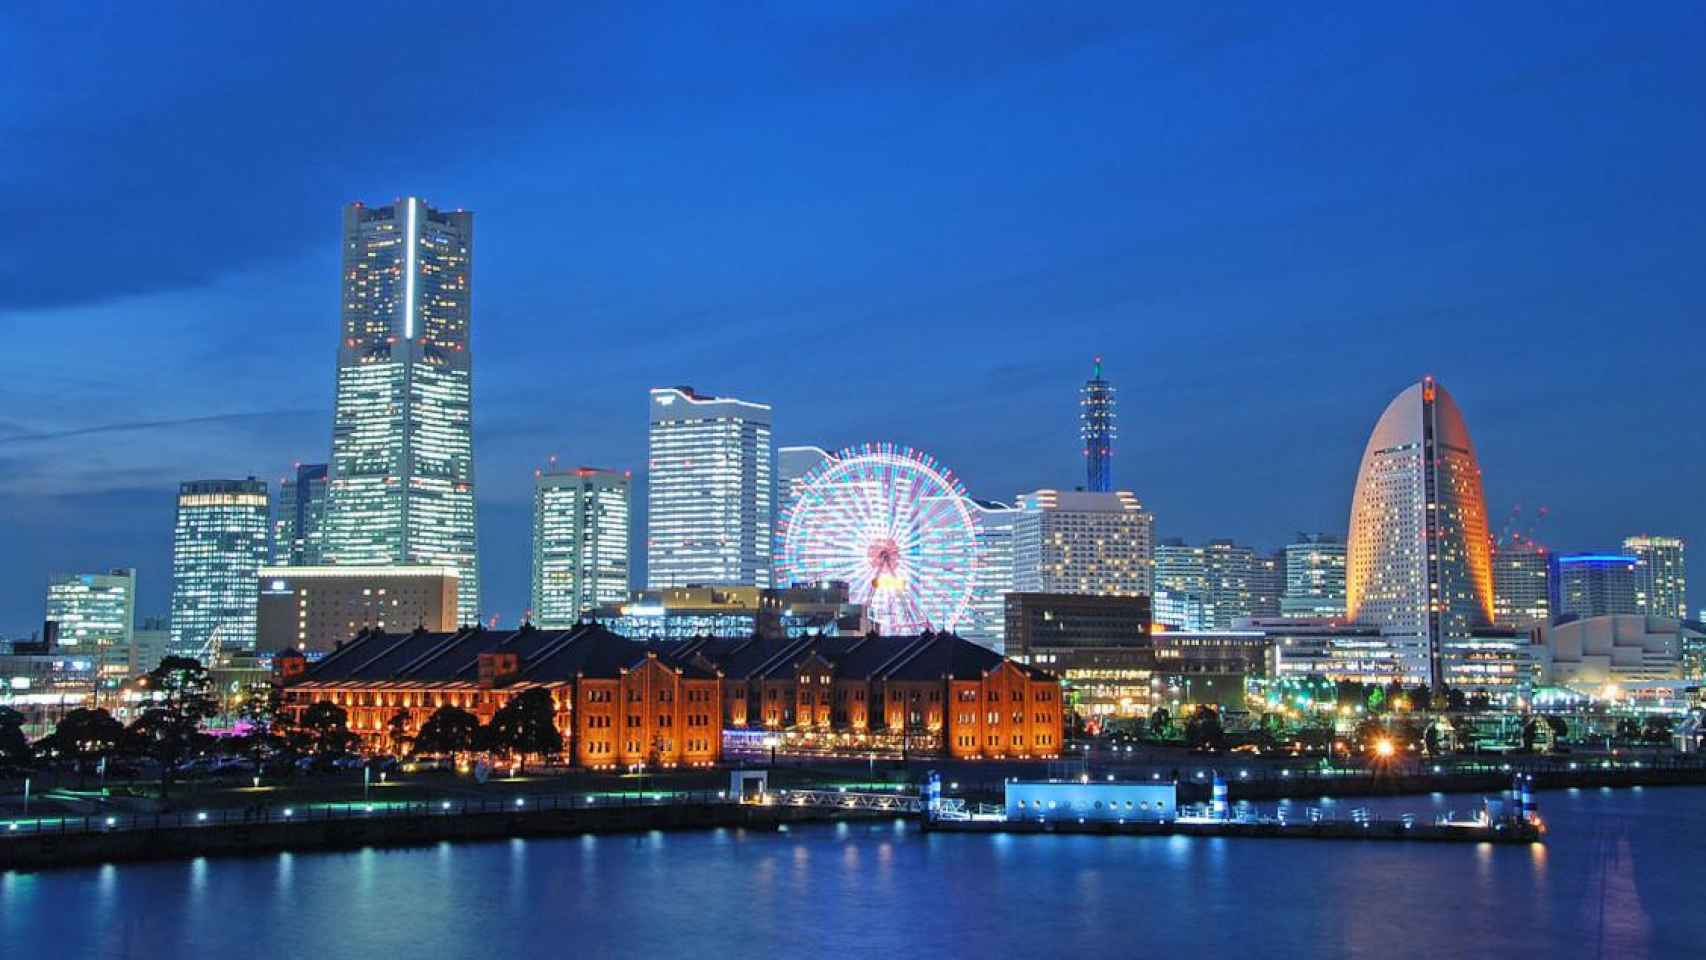 El distrito de negocios Minato Mirai de Yokohama, uno de los ejemplos analizados en las sesiones Barcelona 4.0 de la BNEW / WIKIMEDIA COMMONS